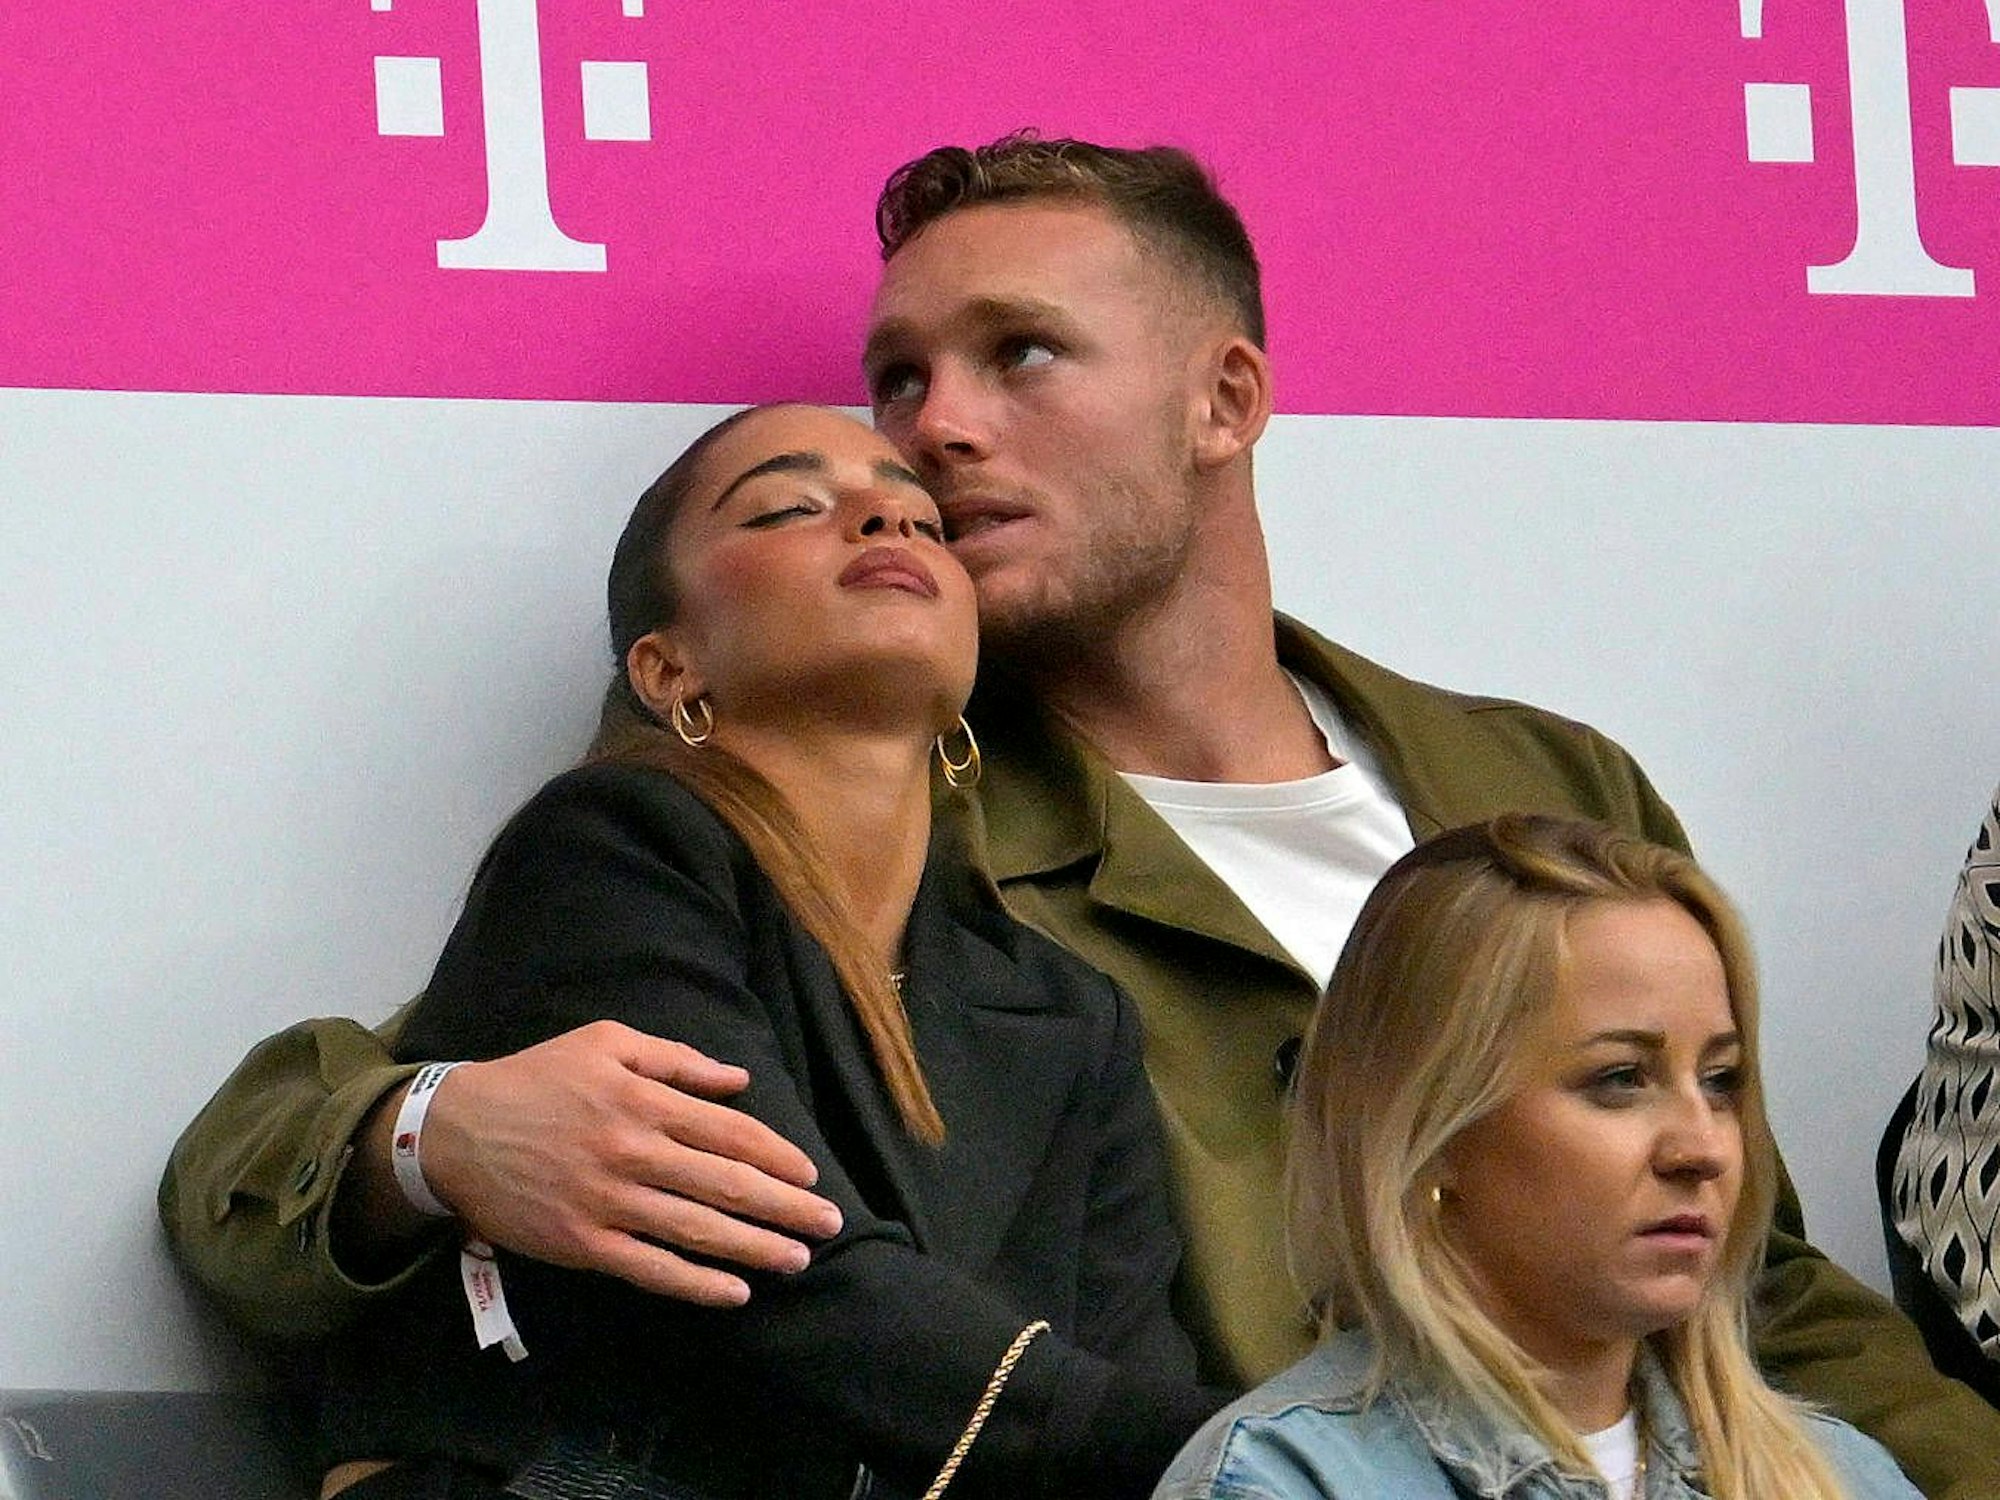 Bayern Münchens Daniel Peretz hat seine Freundin Noa Kirel im Arm. Sie sitzen auf der Tribüne der Allianz-Arena.